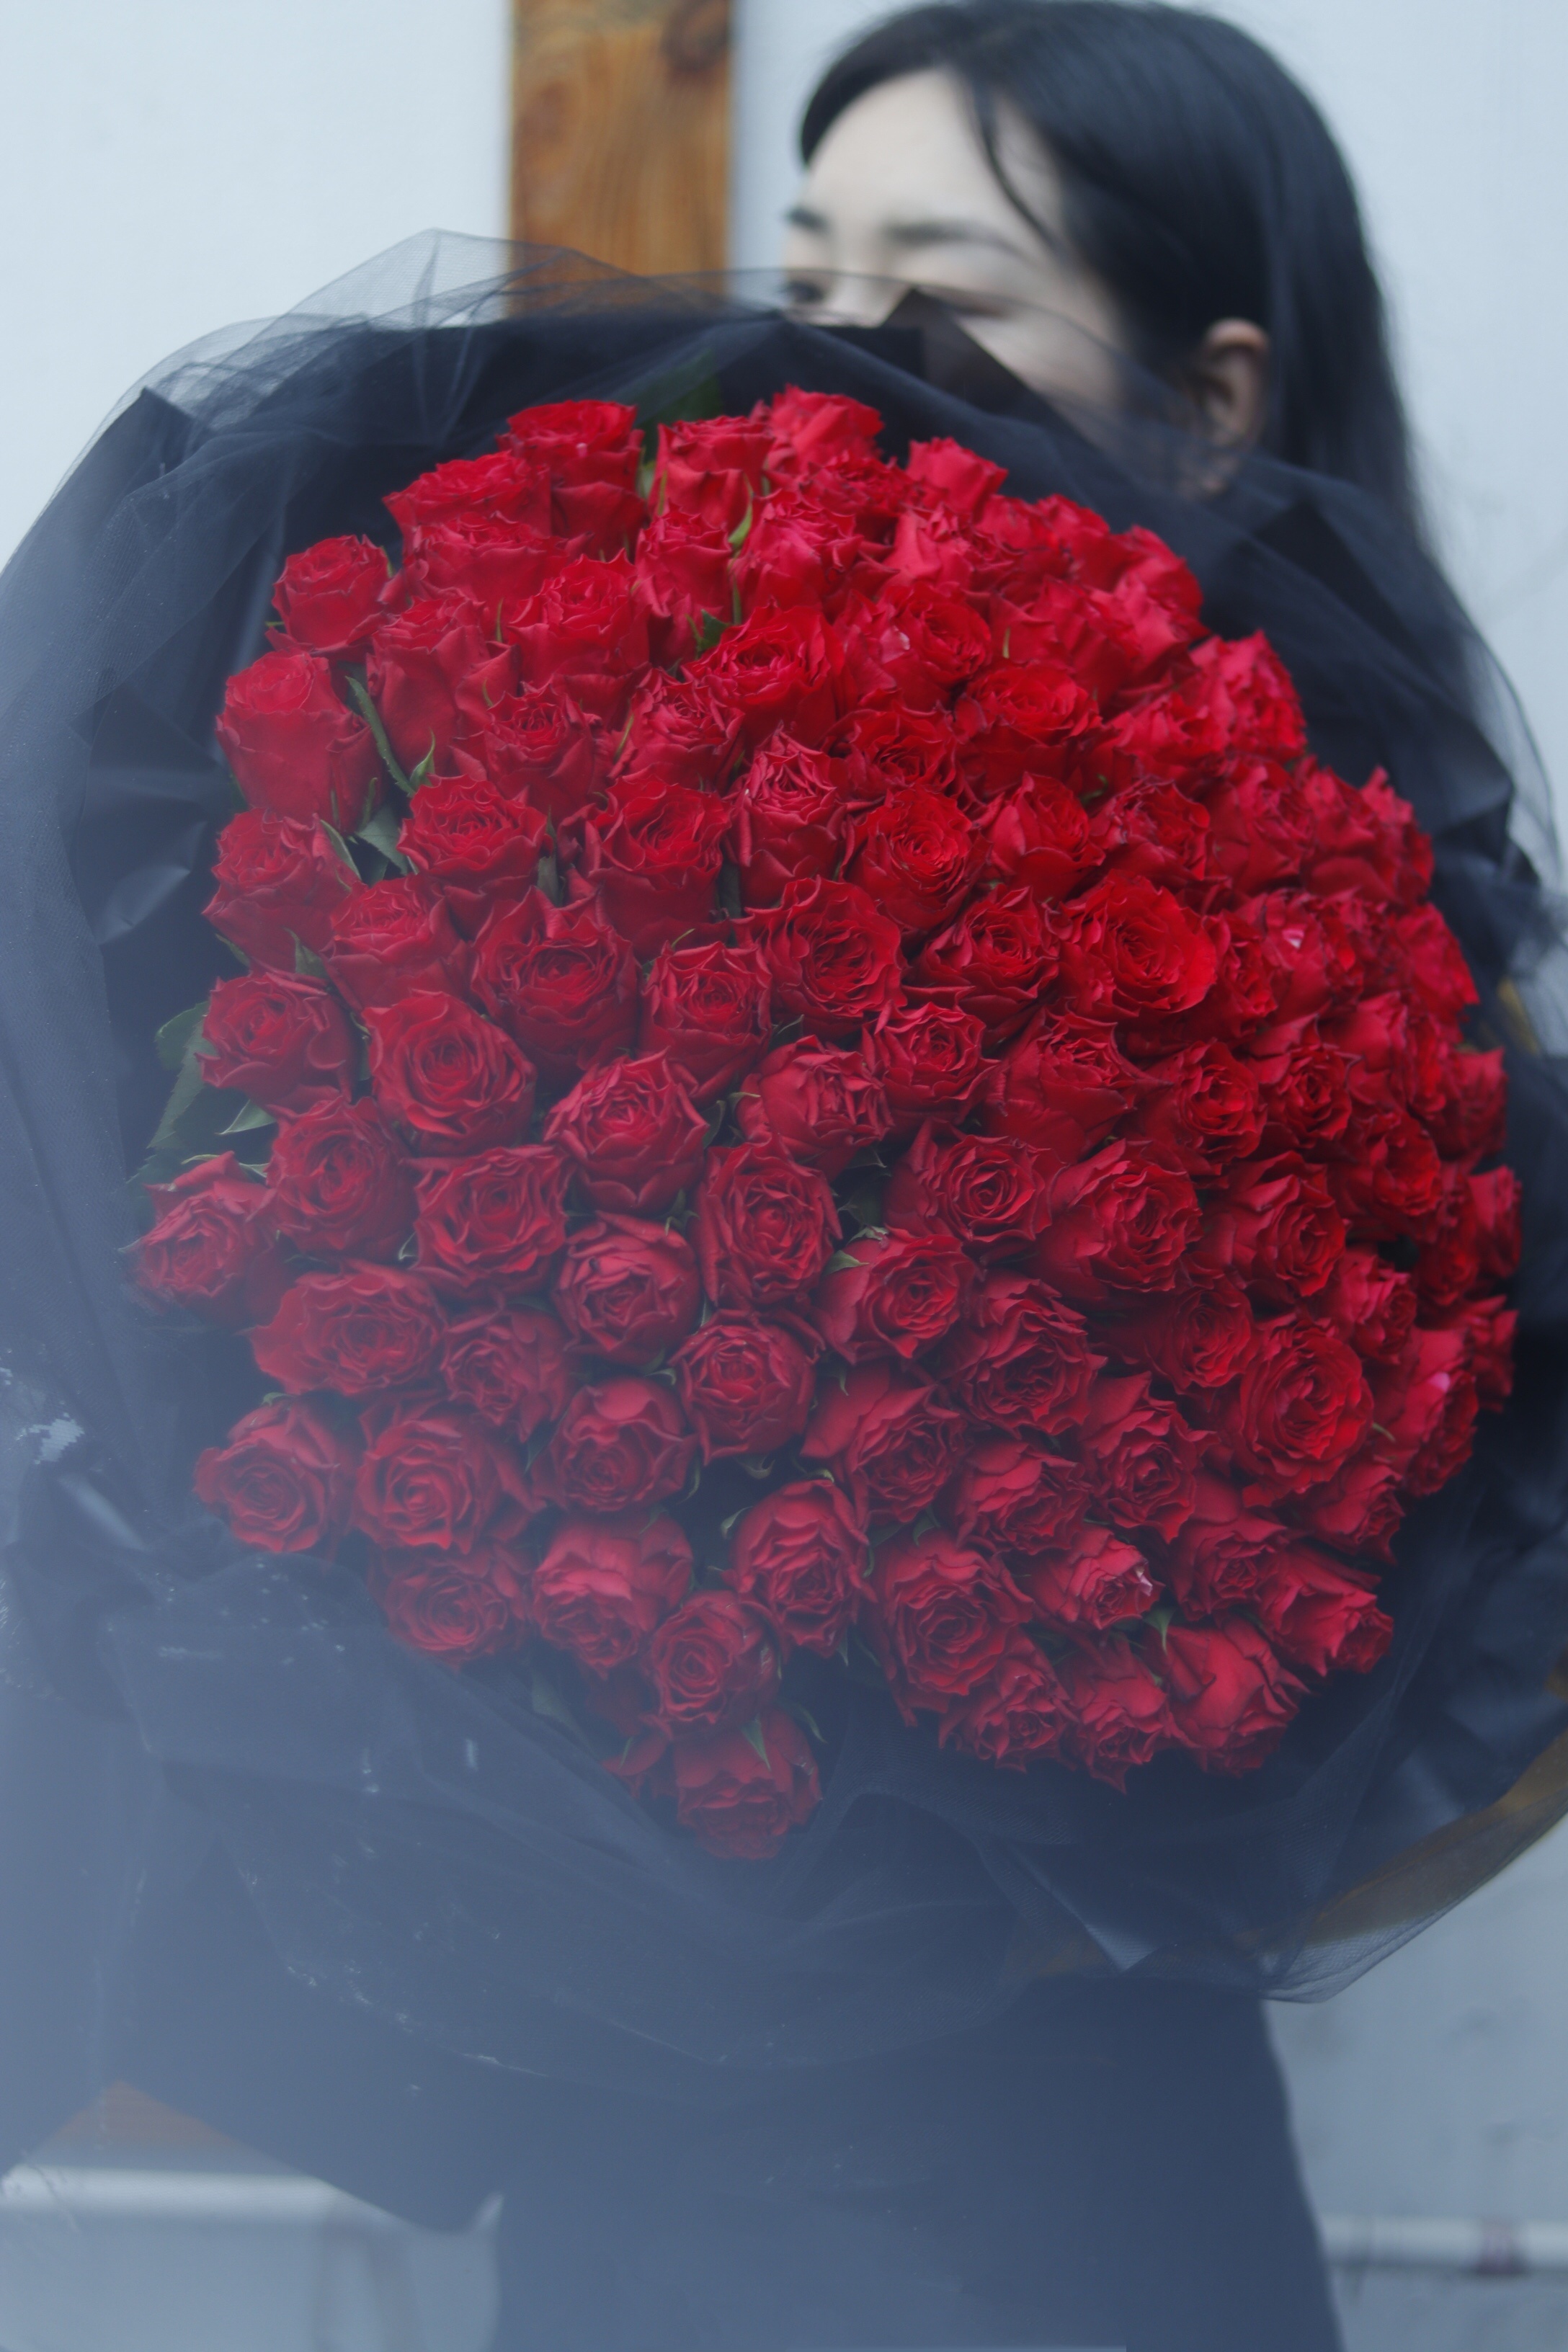 爱意浓浓----红玫瑰花束-逛芭厘智慧新零售